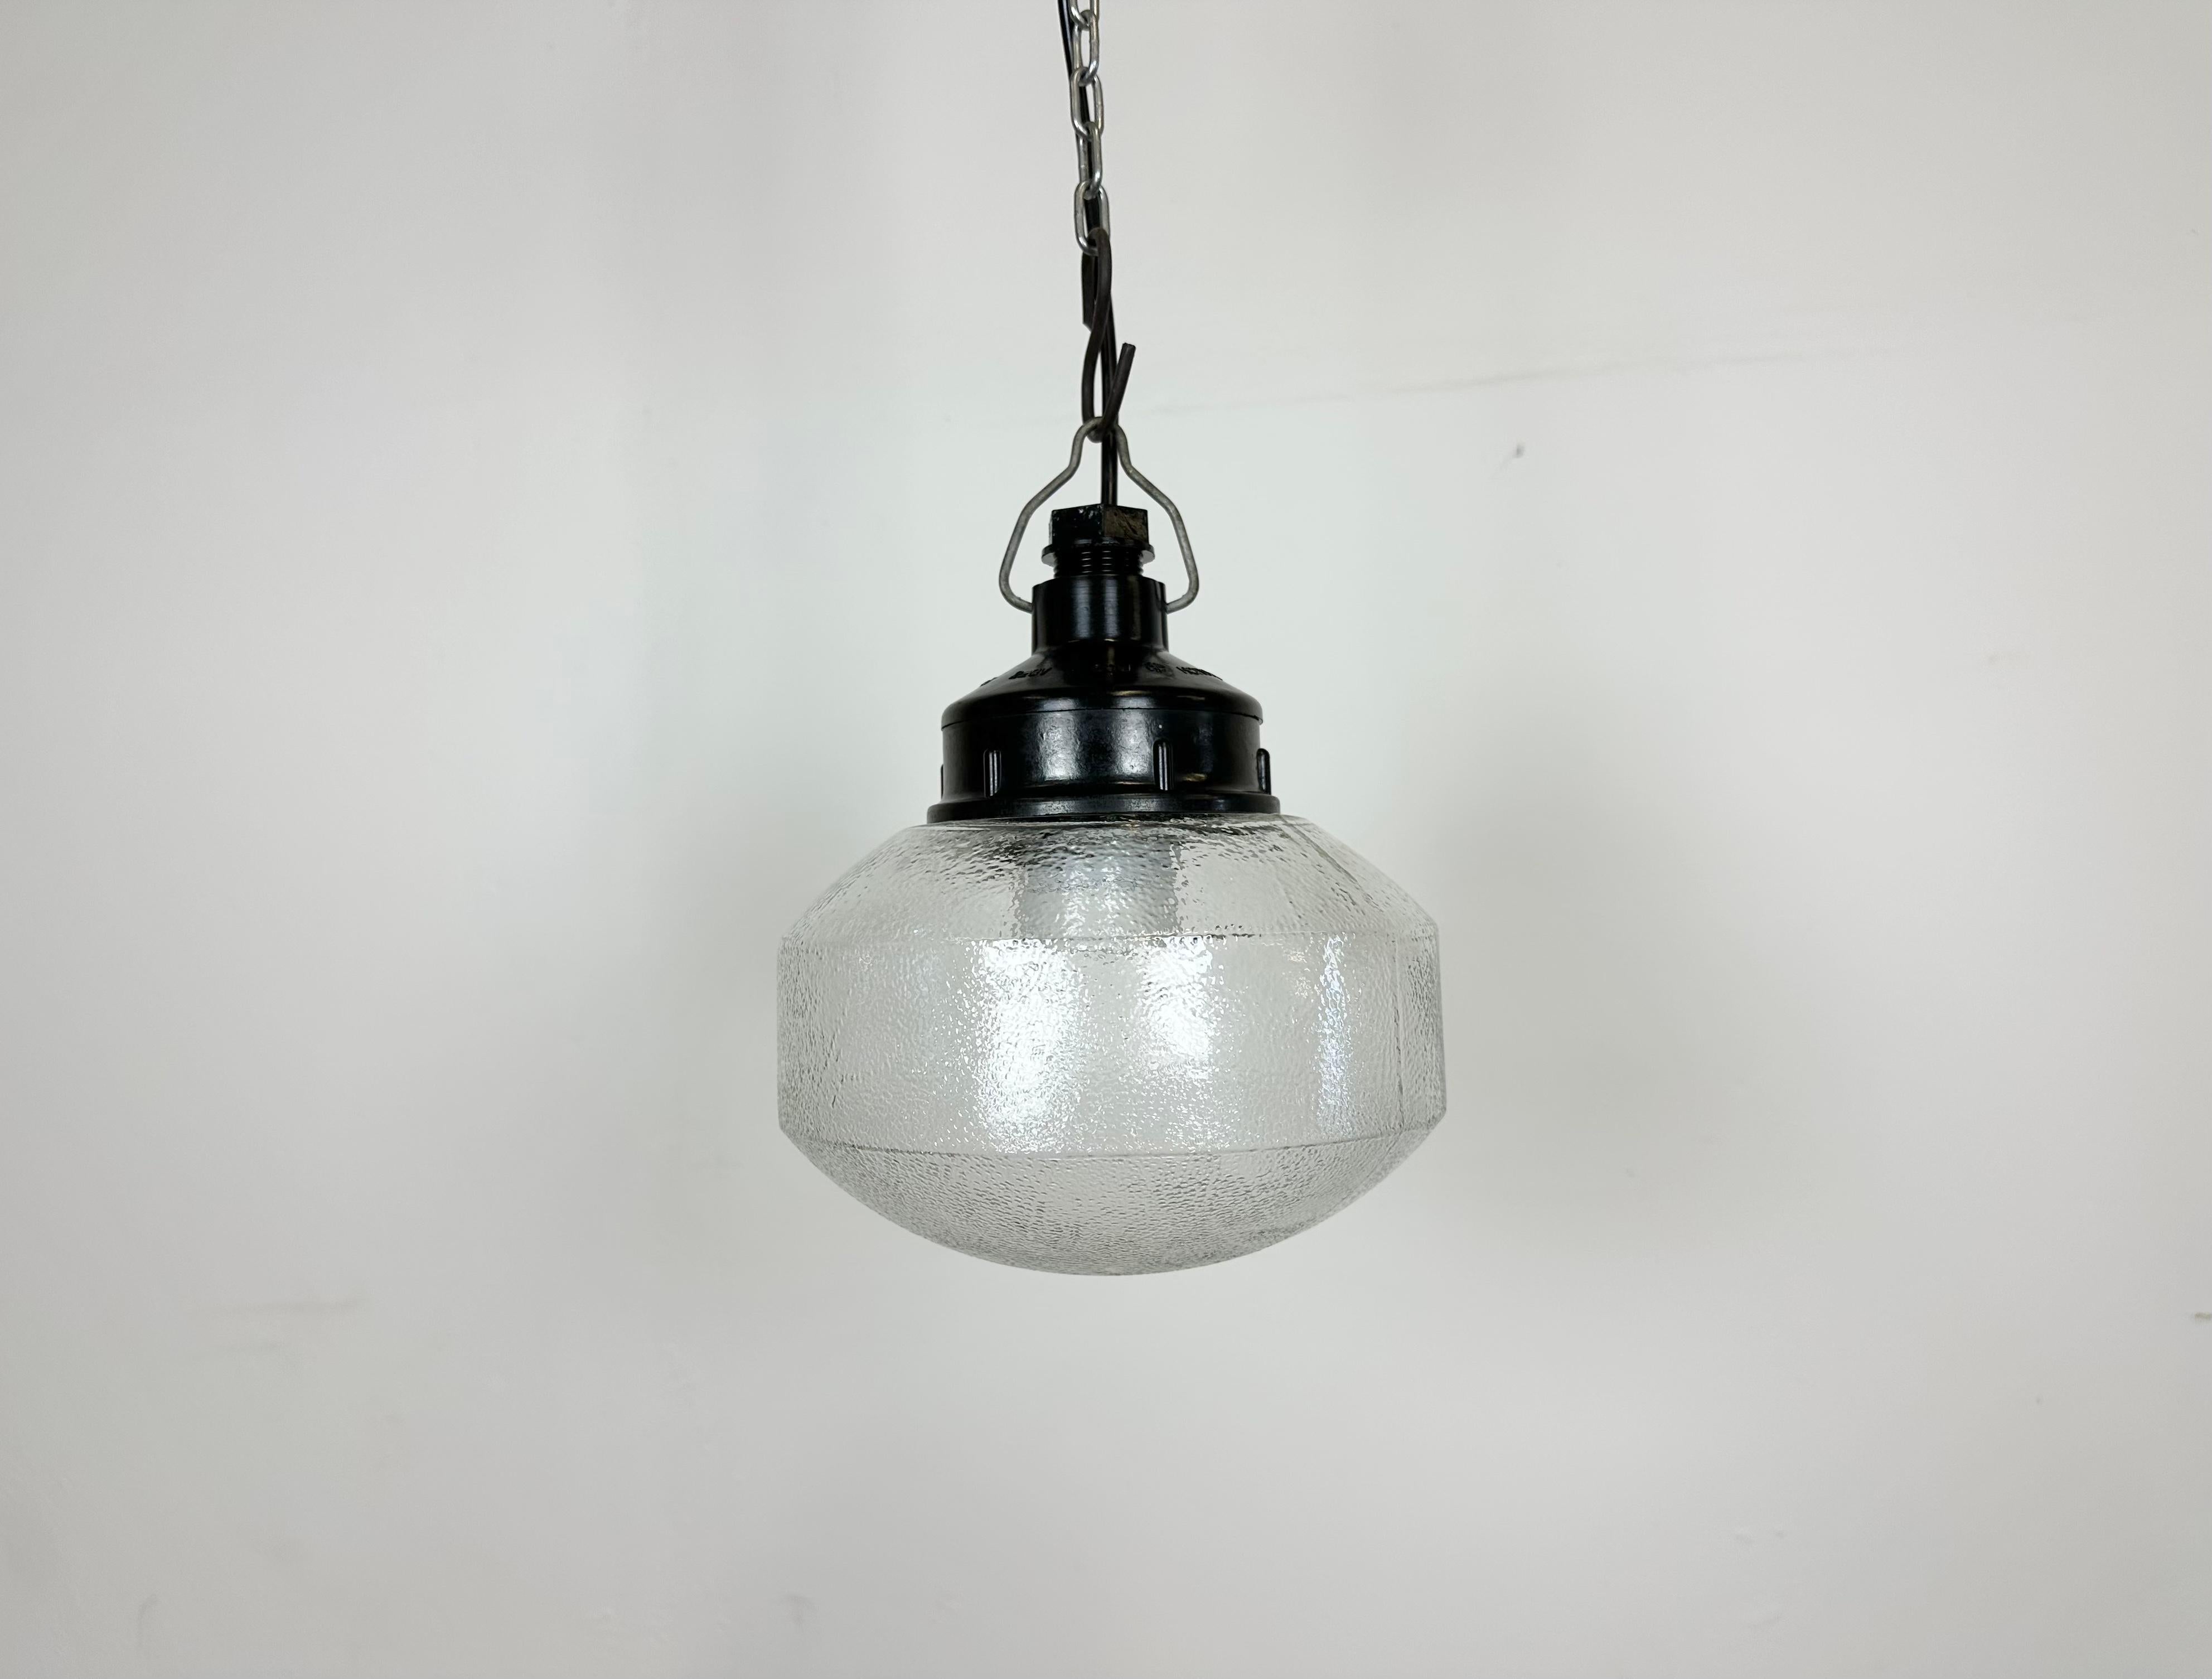 Lampe industrielle vintage fabriquée dans l'ex-Union soviétique au cours des années 1970. Il est doté d'un plateau en bakélite marron et d'un couvercle en verre dépoli. La douille nécessite des ampoules E27/ E26. Un nouveau fil. Le poids de la lampe